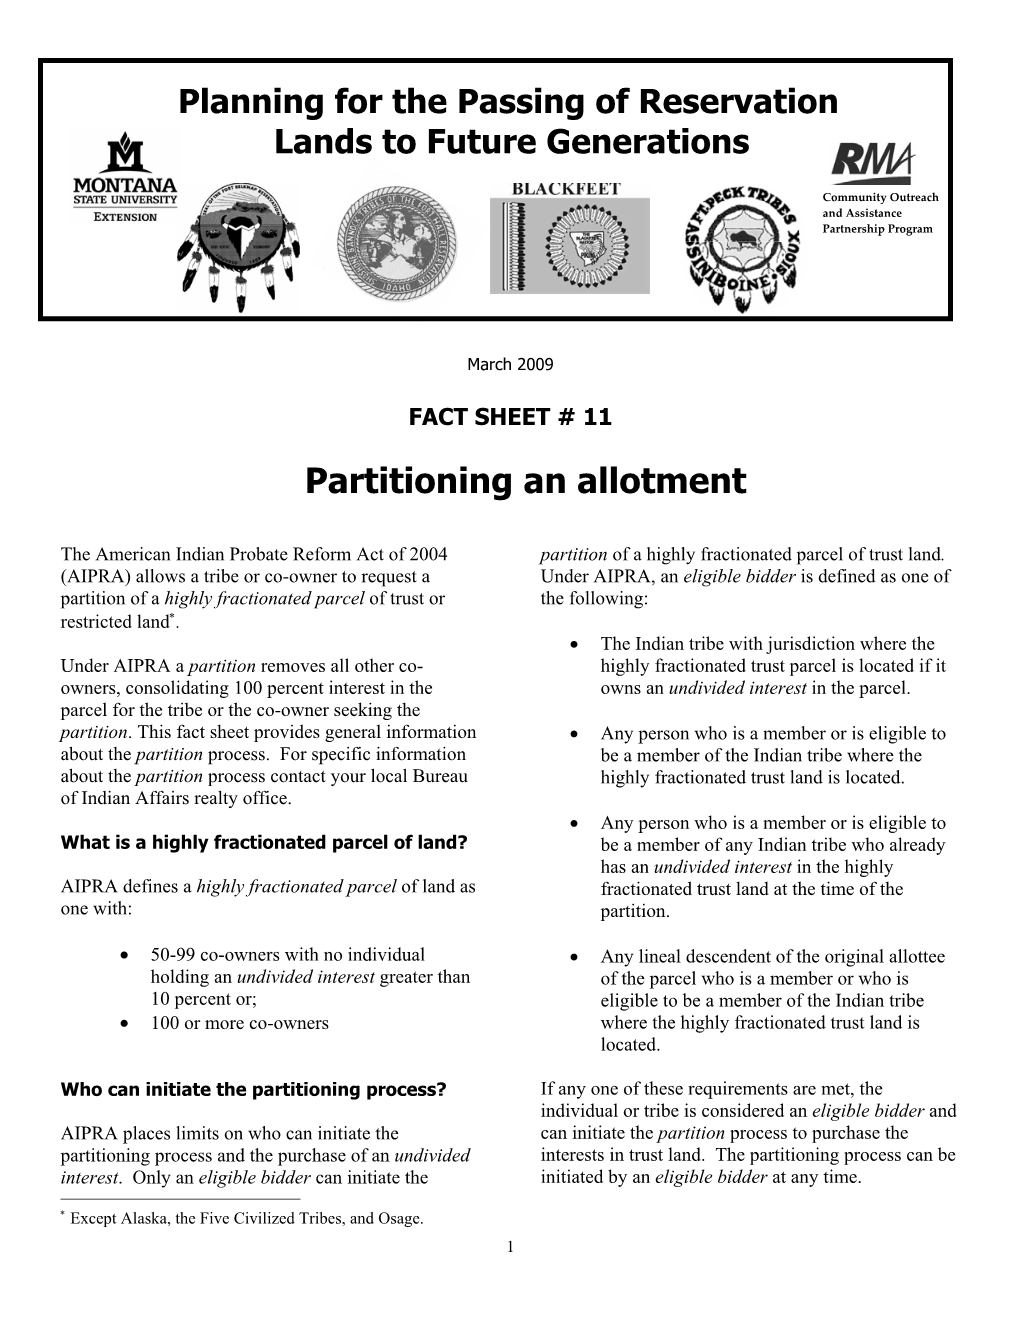 Fact Sheet #11—Partitioning an Allotment